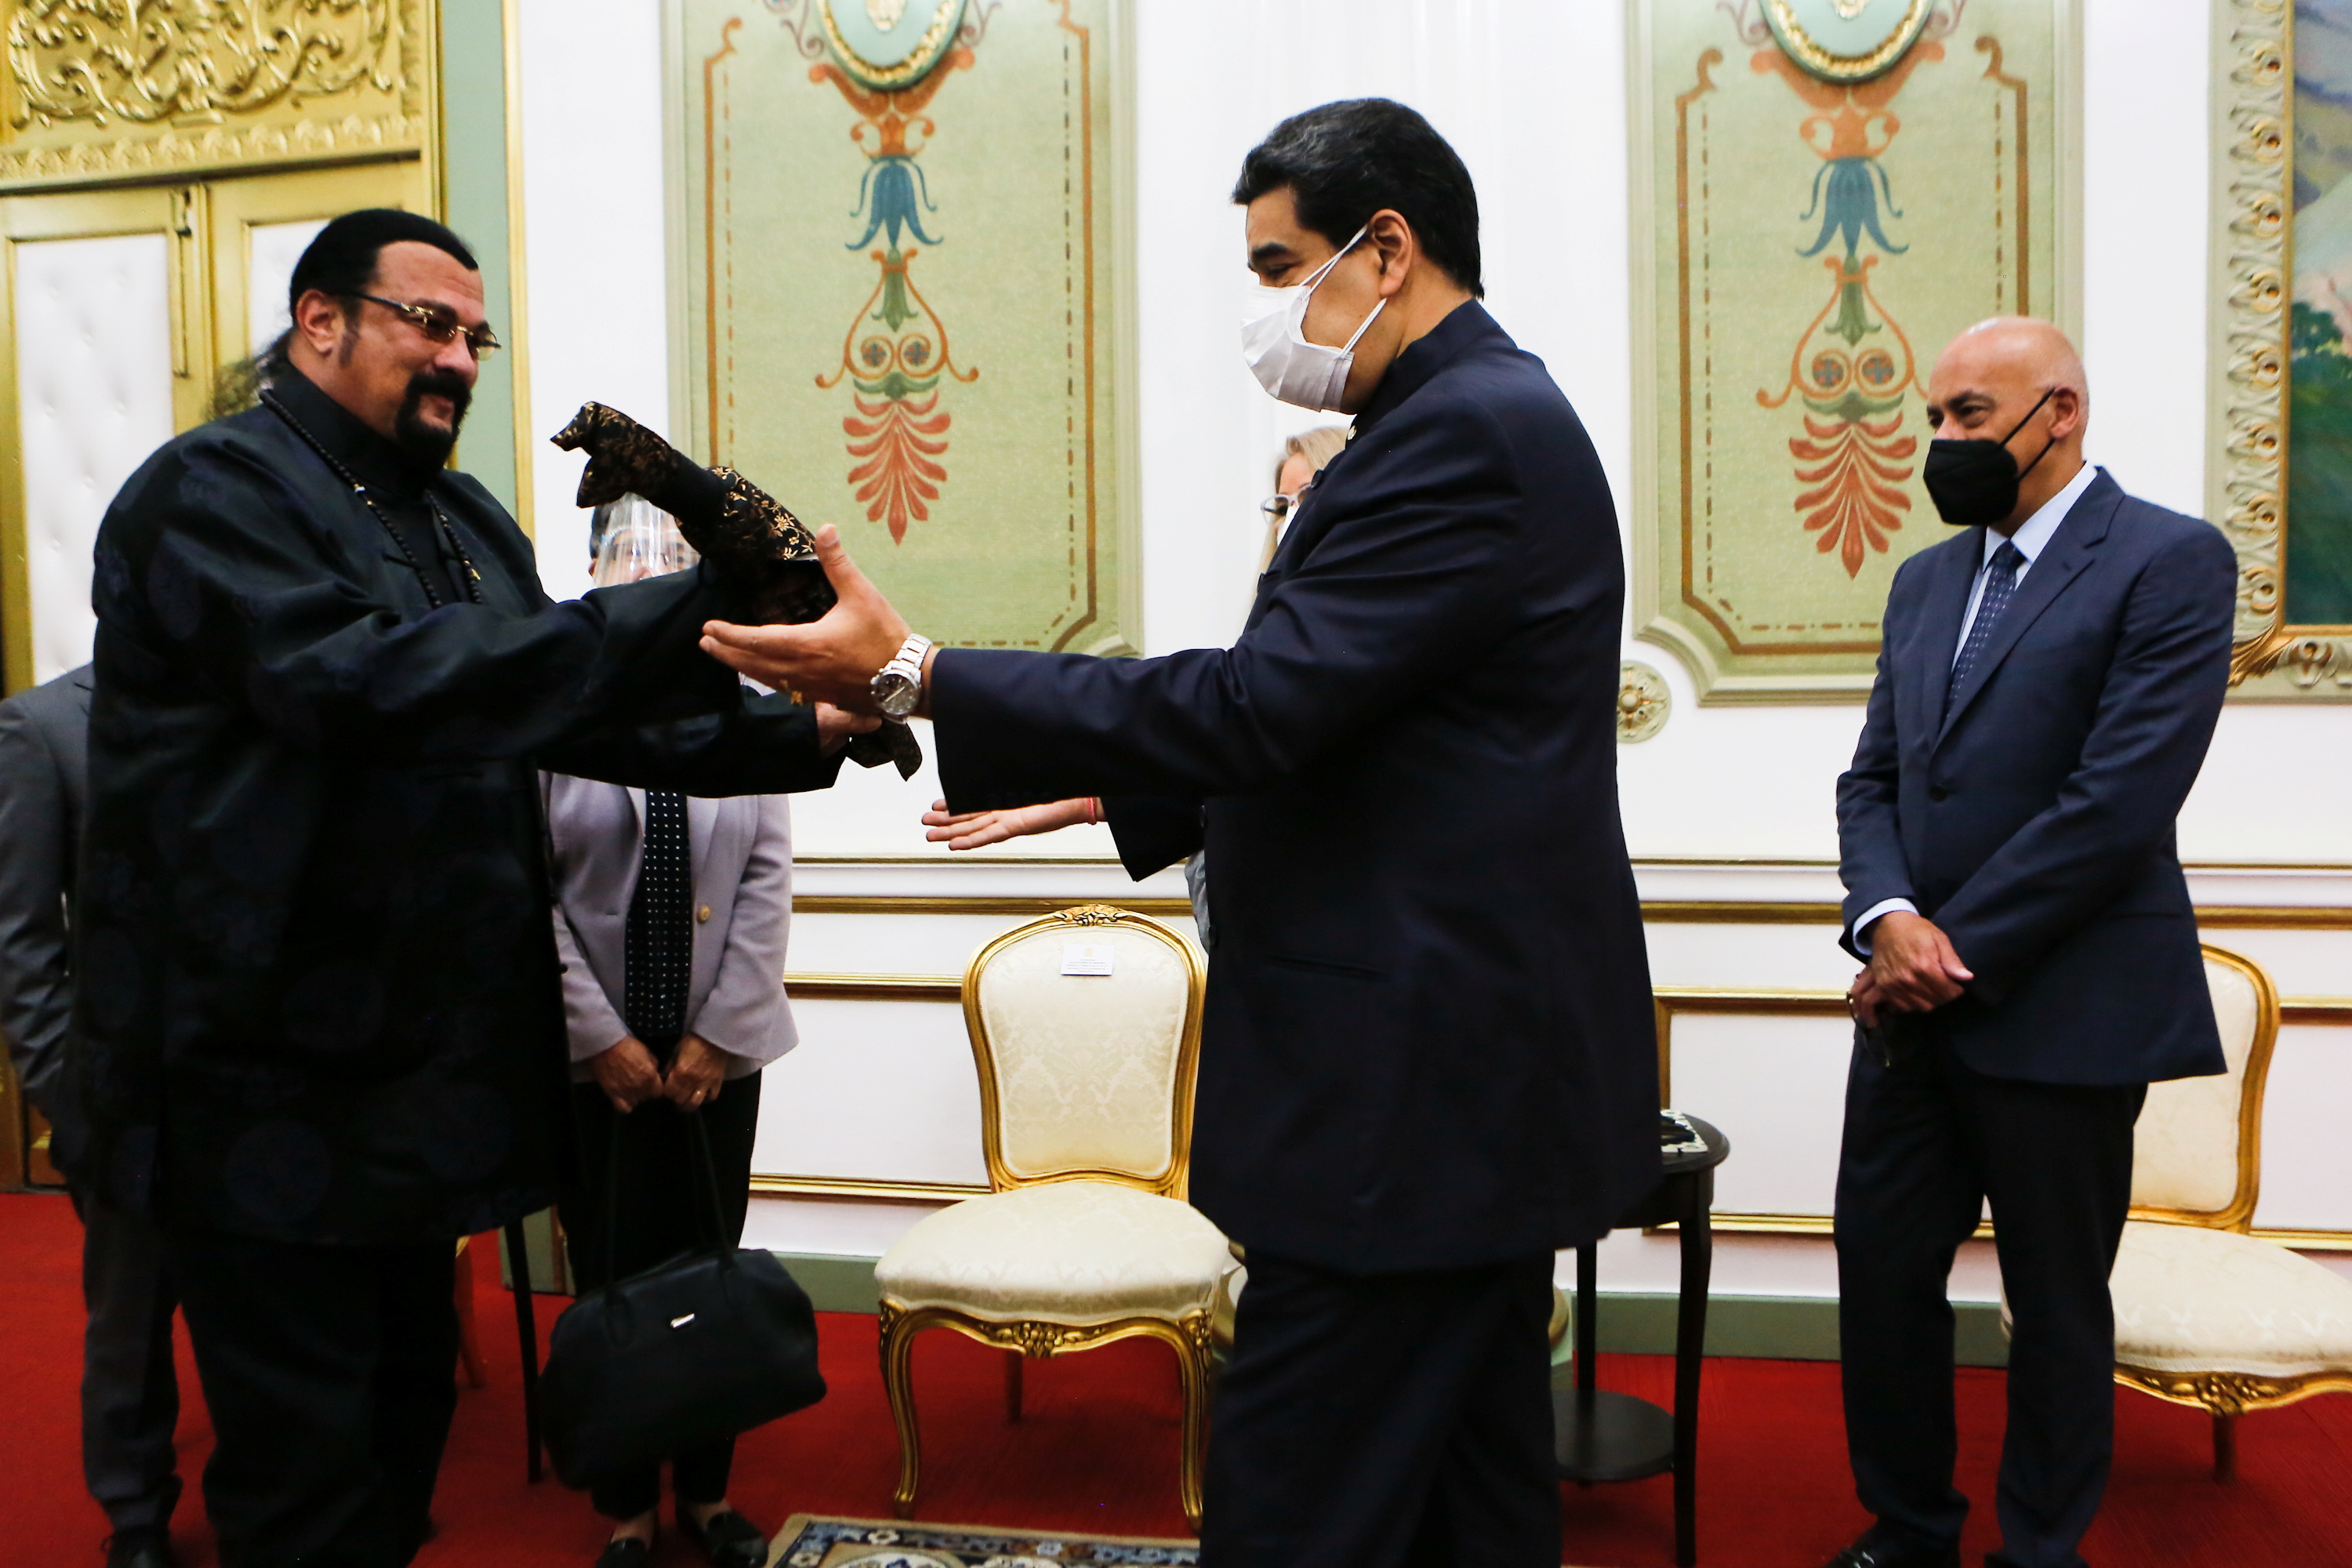 Venezuela's President Nicolas Maduro receives a samurai sword as a gift from actor Steven Seagal, in Caracas